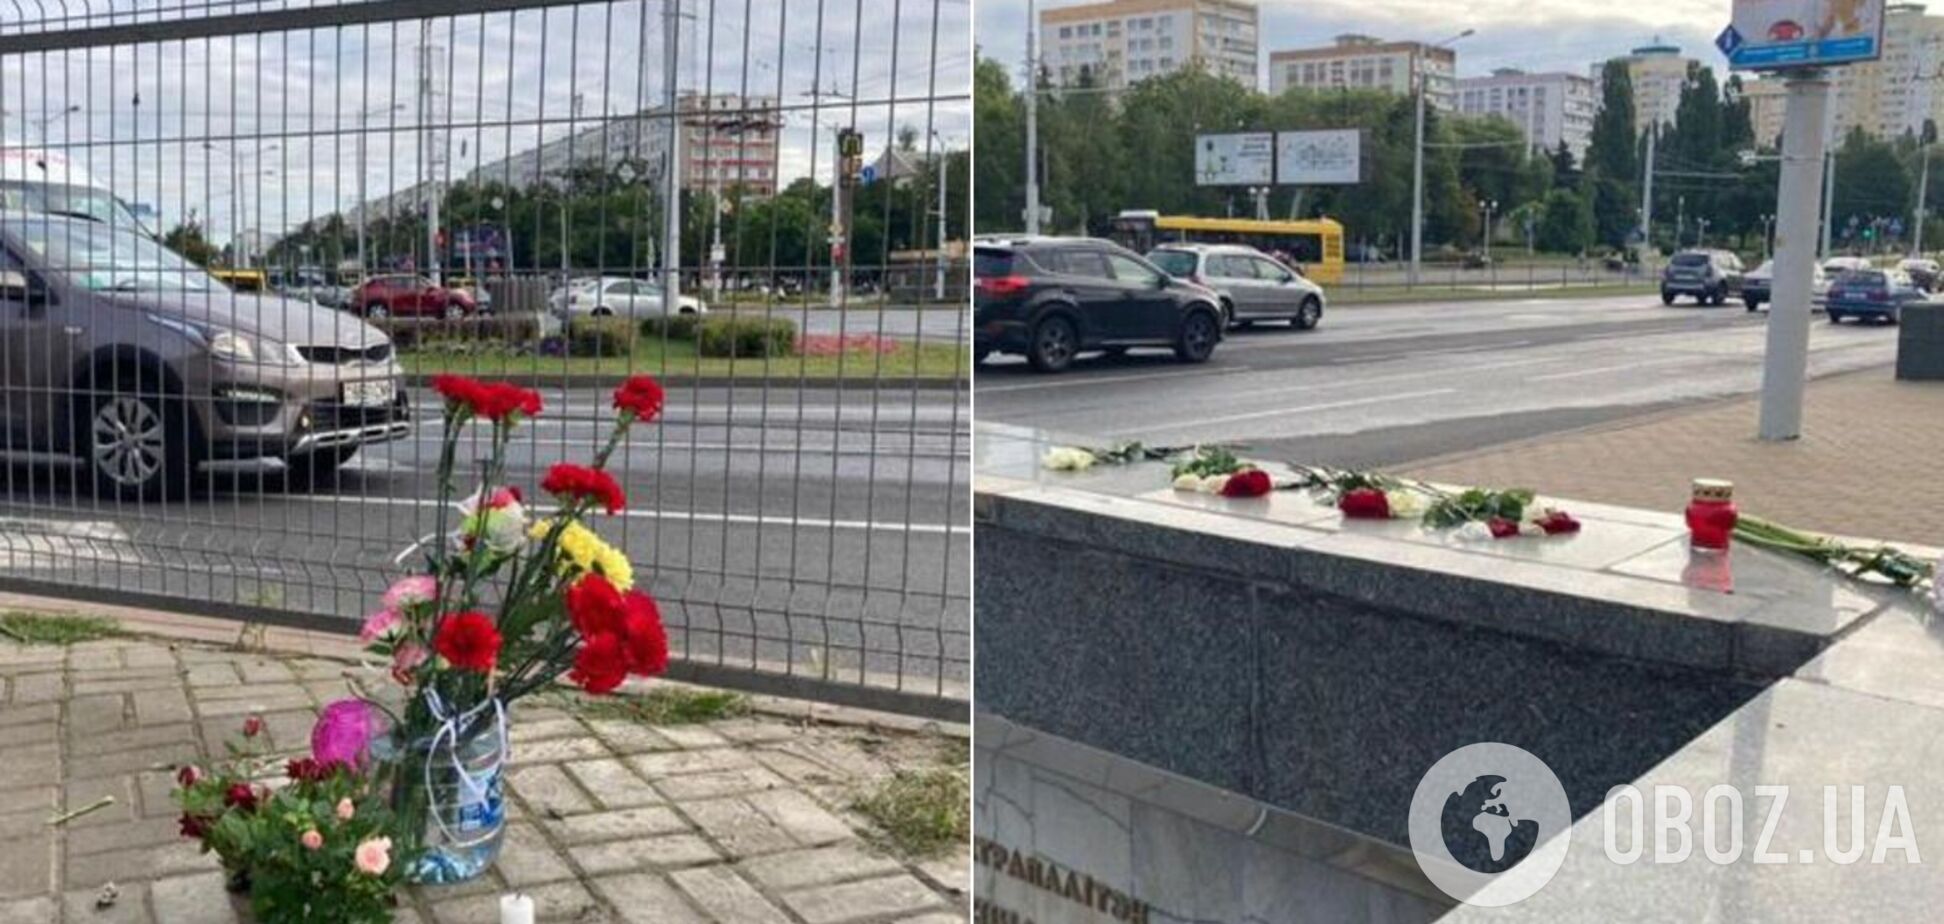 У Мінську знищили меморіал загиблому під час протестів: квіти несуть знову. Фото